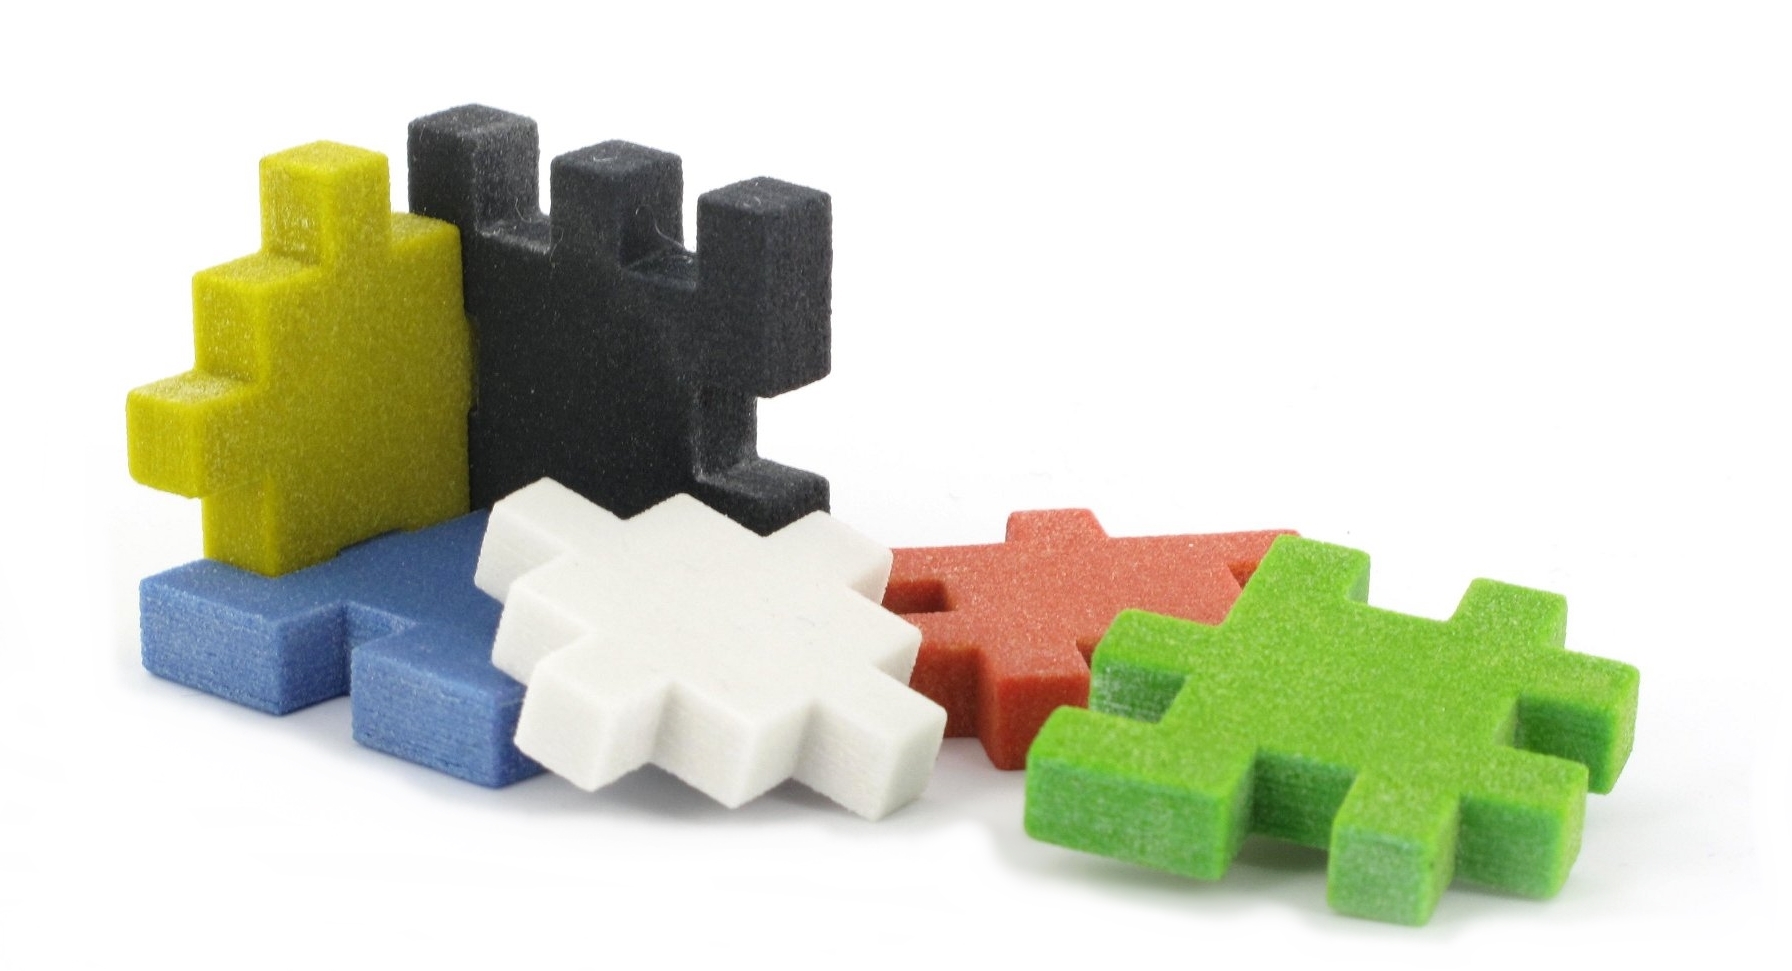 CreativeTools.se - PackshotCreator - 3D printed puzzle